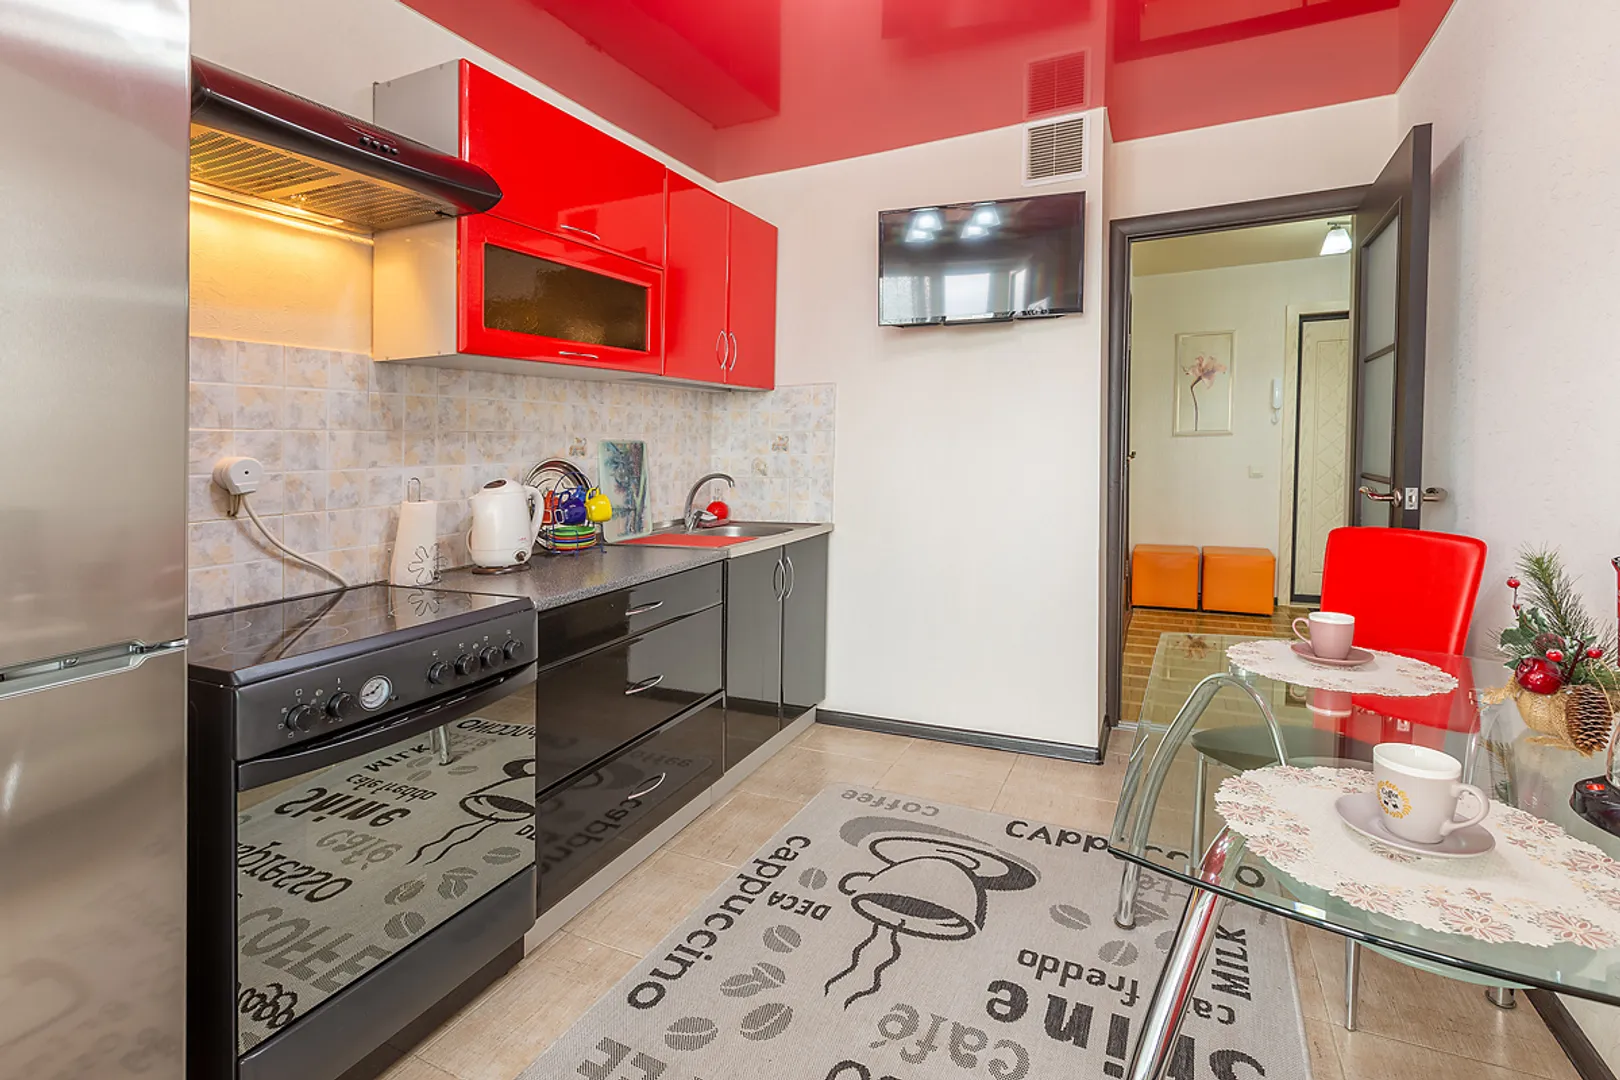 Просторная кухня с кухонными принадлежностями, с телевизором и большим холодильником.